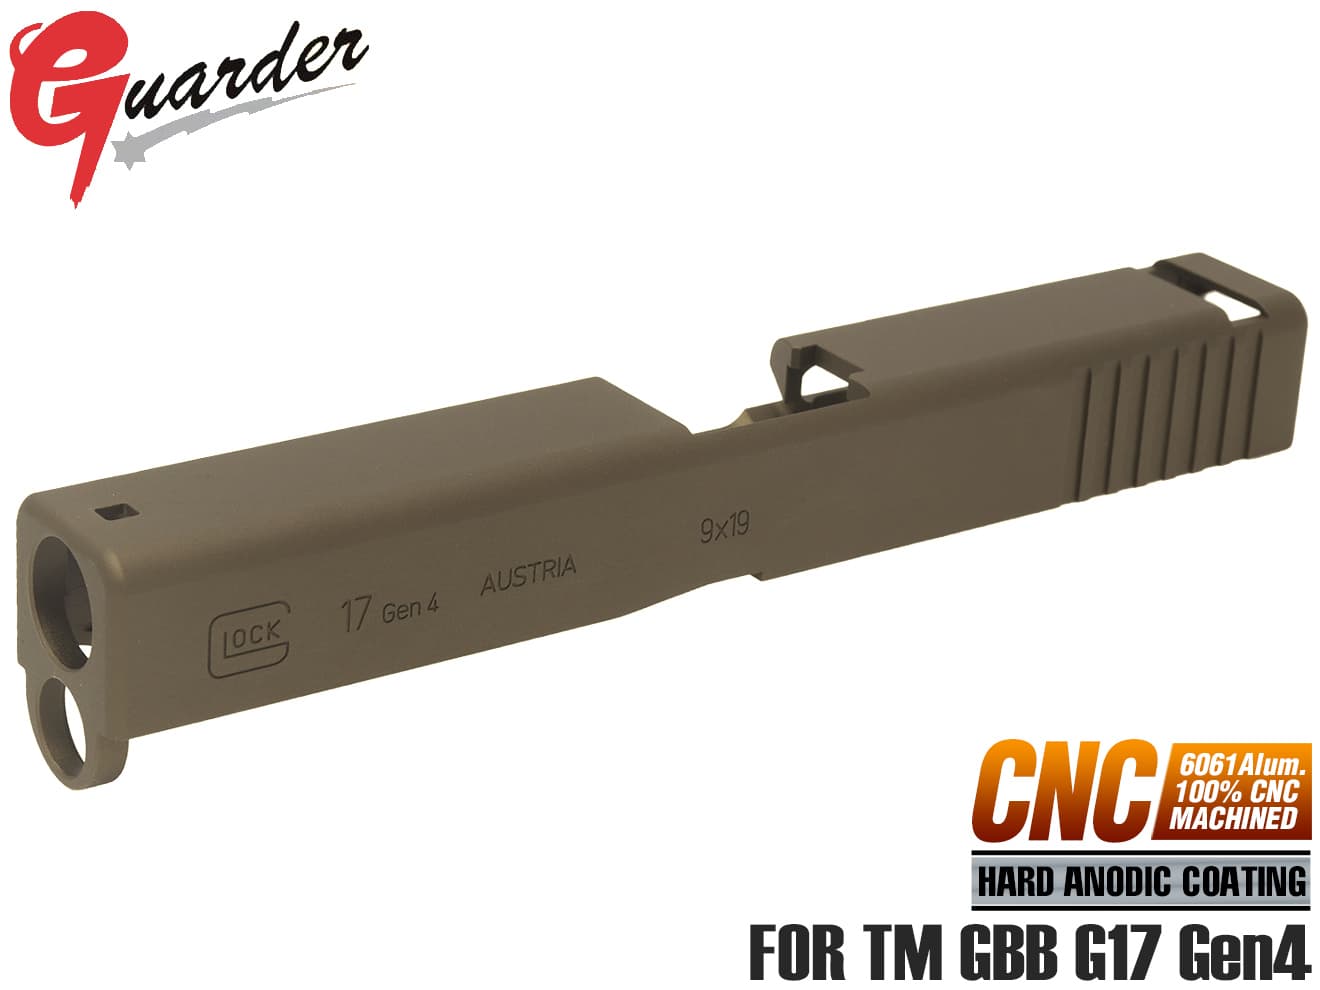 GLK-211(FDE)■GUARDER G17 Gen4 9mm アルミCNC スライド for マルイ G17 Gen4◆東京マルイ MARUI GLOCK グロック ガスブロ 強化 ブラスト処理 マット 質感再現